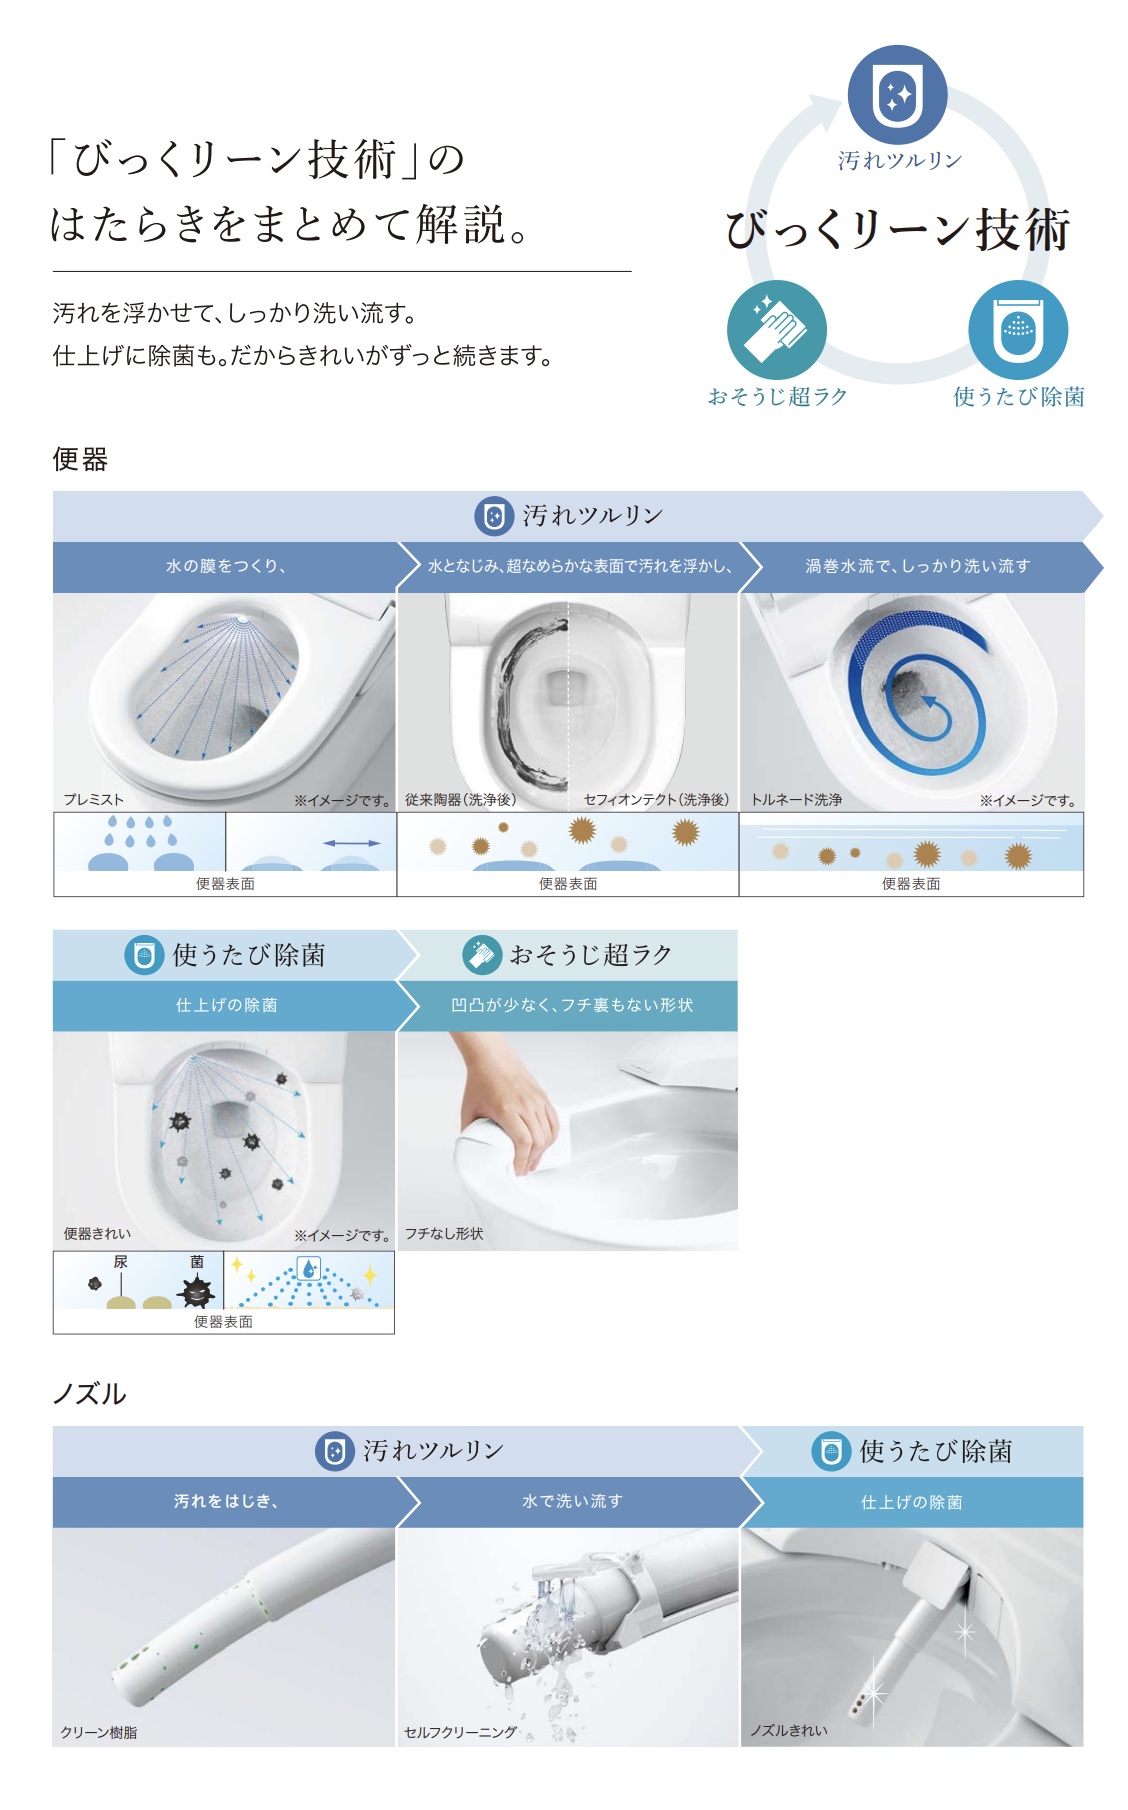 CES9510Fのトイレきれいの技術